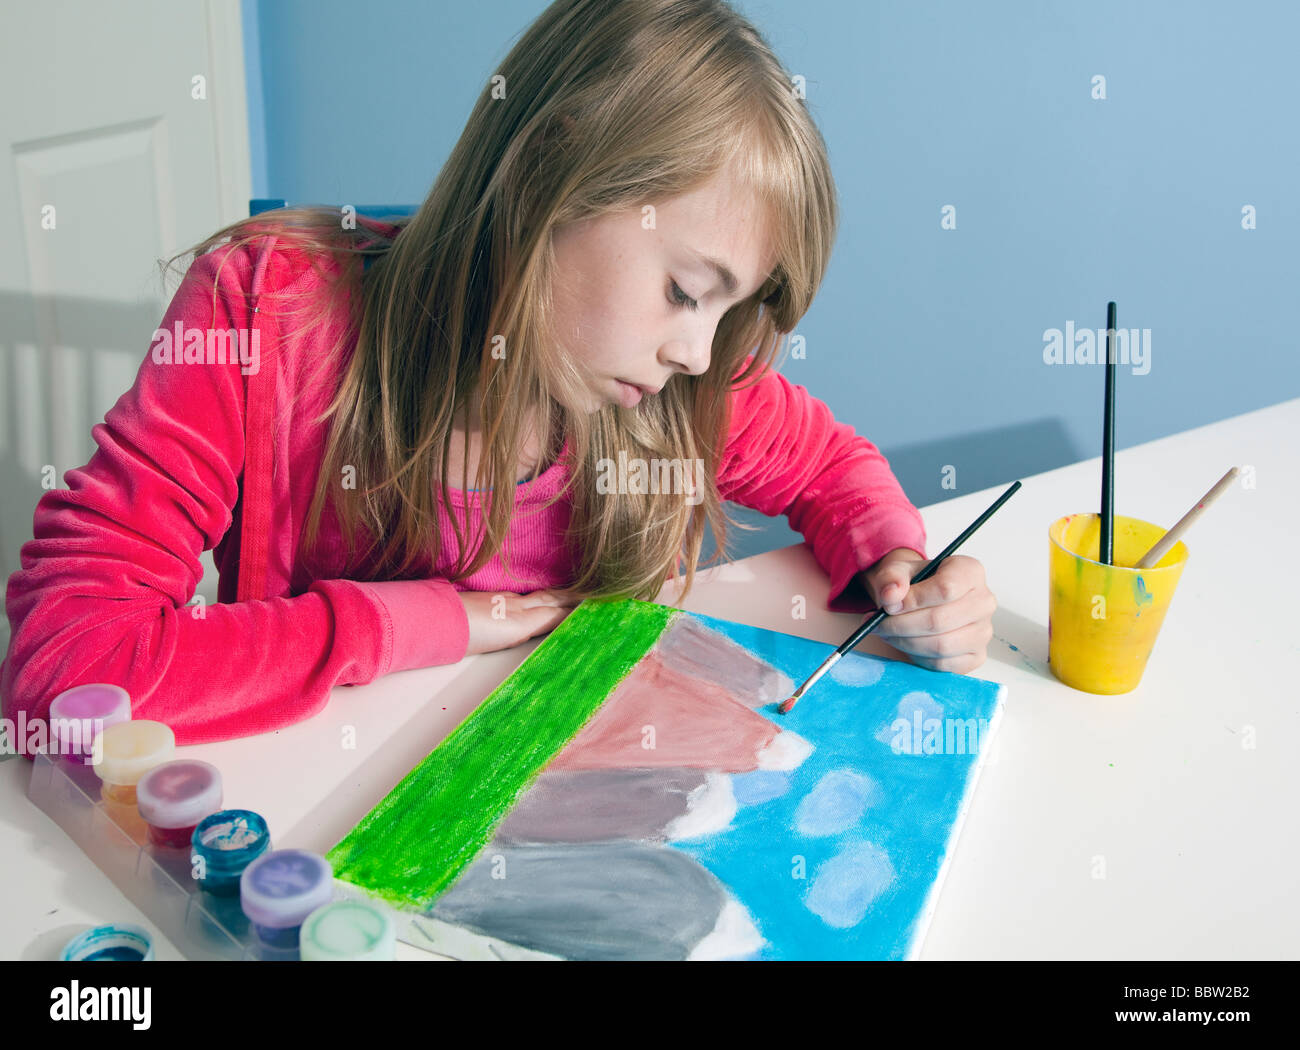 Kleines Kind mit einem Pinsel, ein Bild zu malen Stockfoto